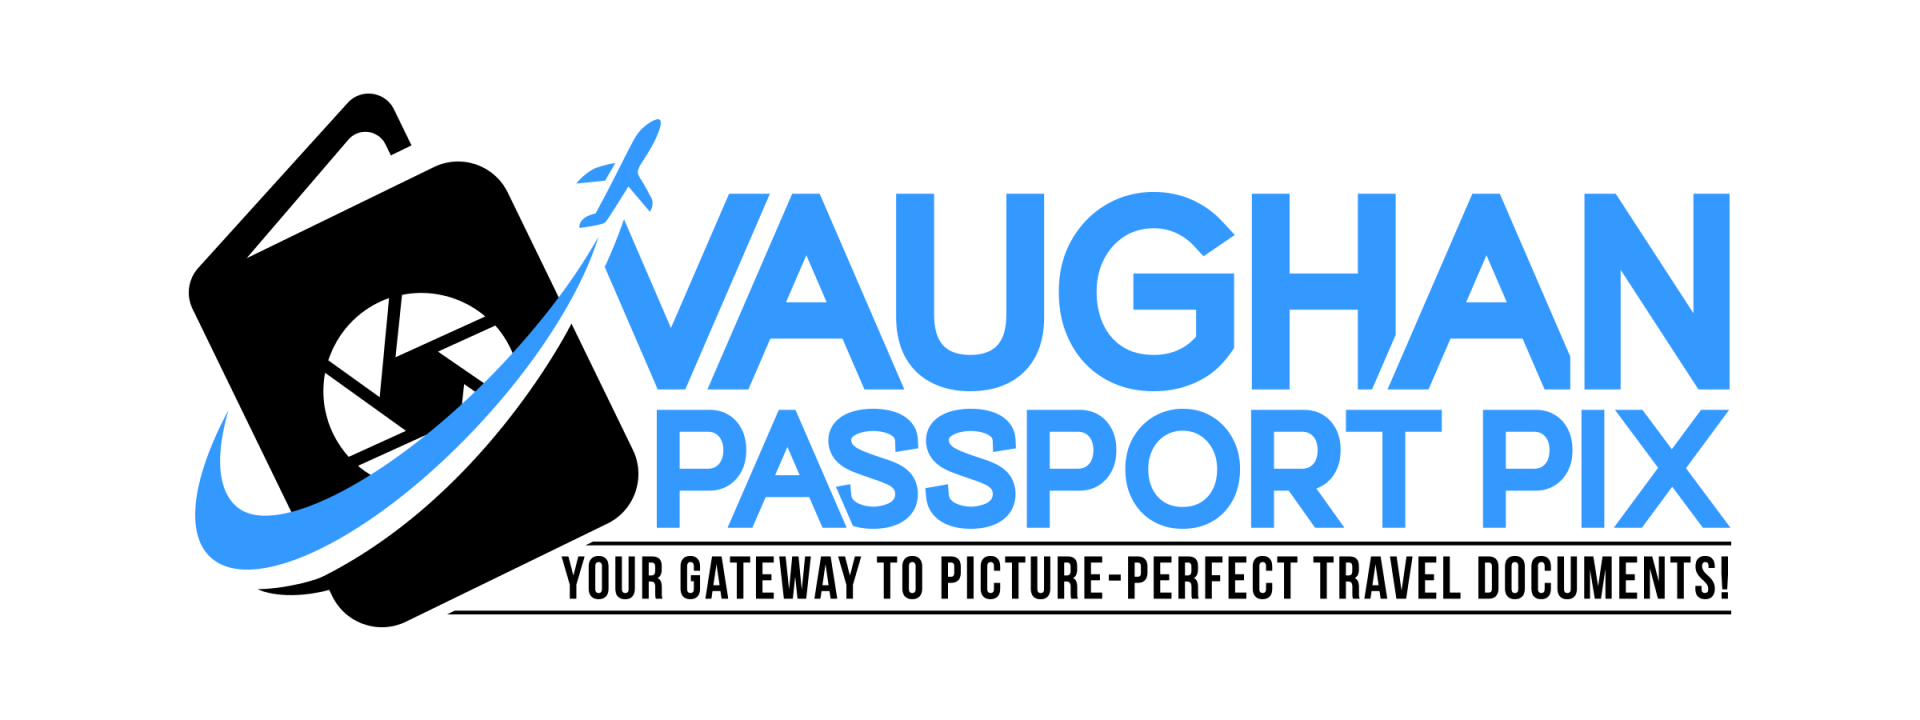 Vaughan Passport Pix copy (1)